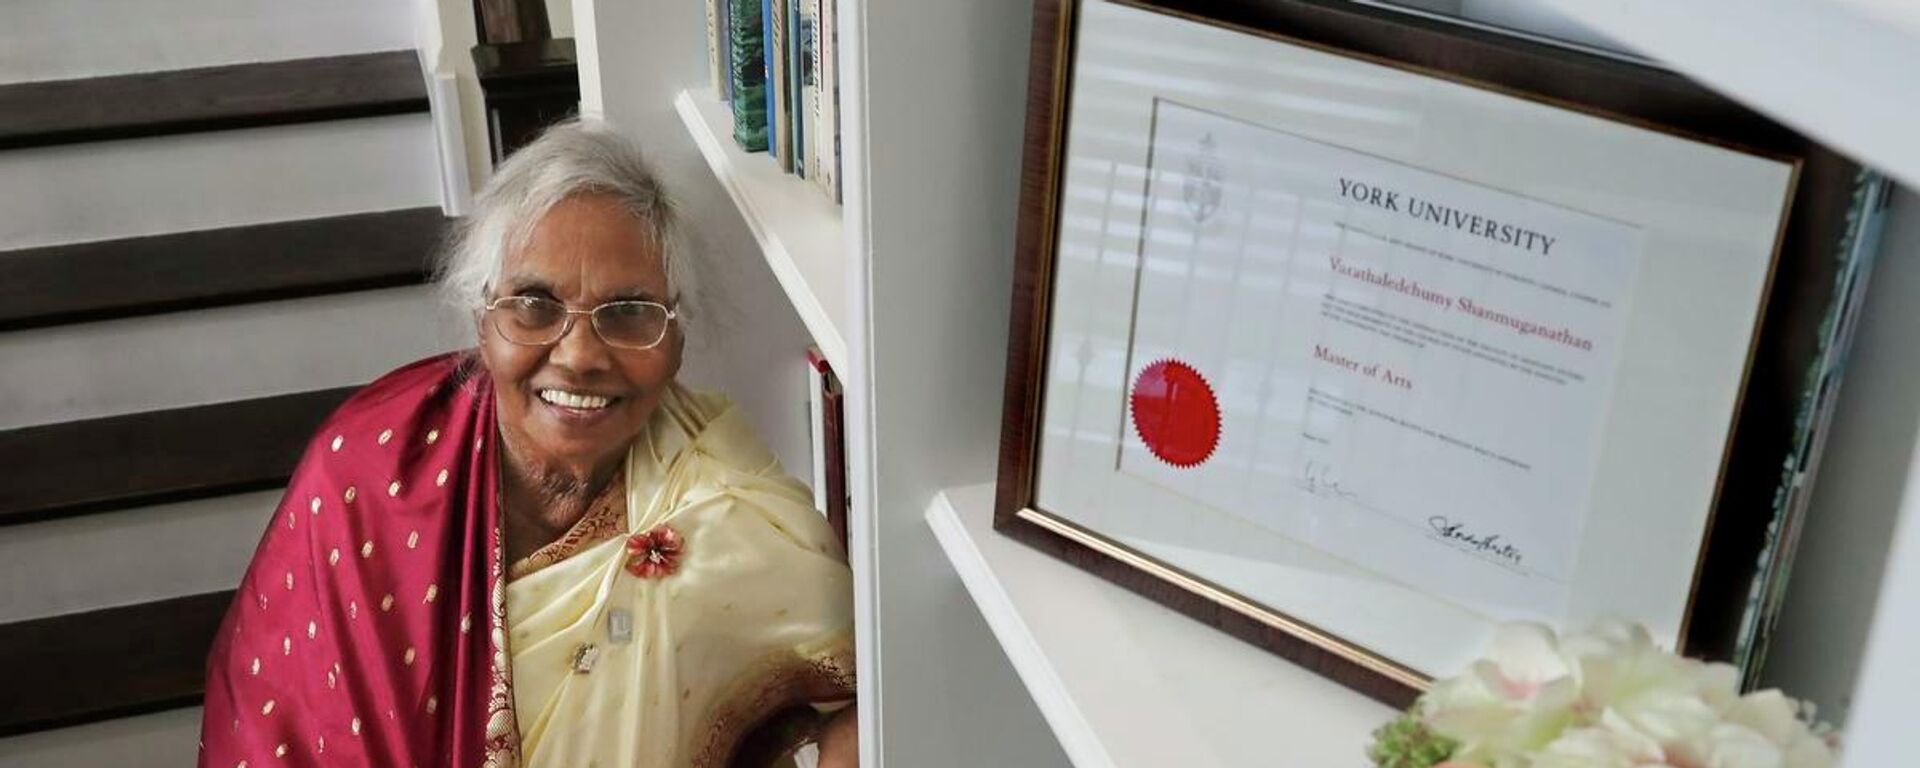 Sri Lanka'dan Kanada'ya göç eden 87 yaşındaki bir kadın, York Üniversitesi'nde yüksek lisans mezunu olan en yaşlı kişi oldu. - Sputnik Türkiye, 1920, 09.11.2021